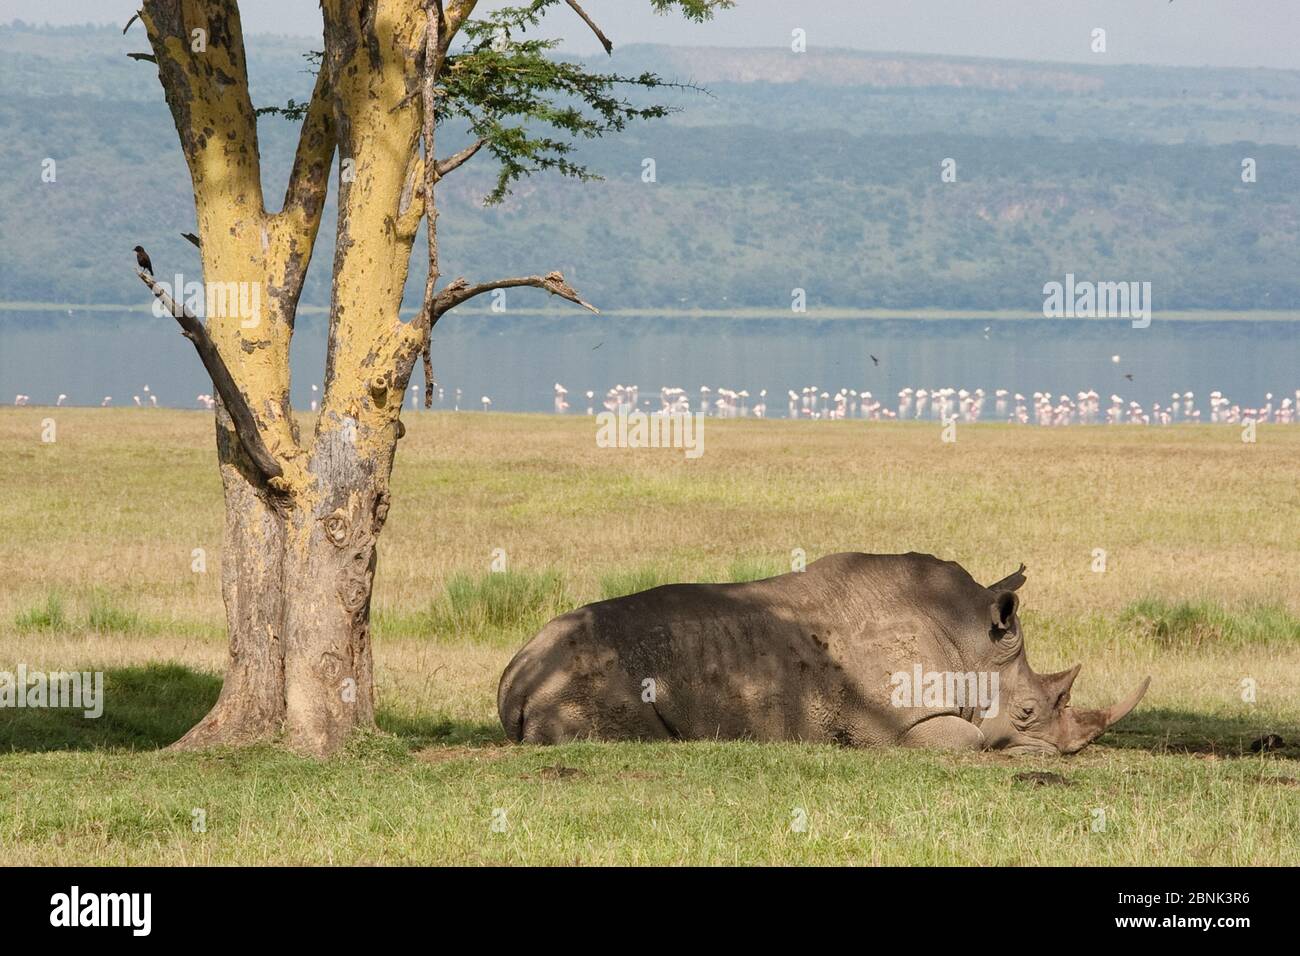 Rinoceronte blanco (Ceratotherium simum) descansando en la sombra, Parque Nacional del Lago Nakuru, Kenia. Foto de stock